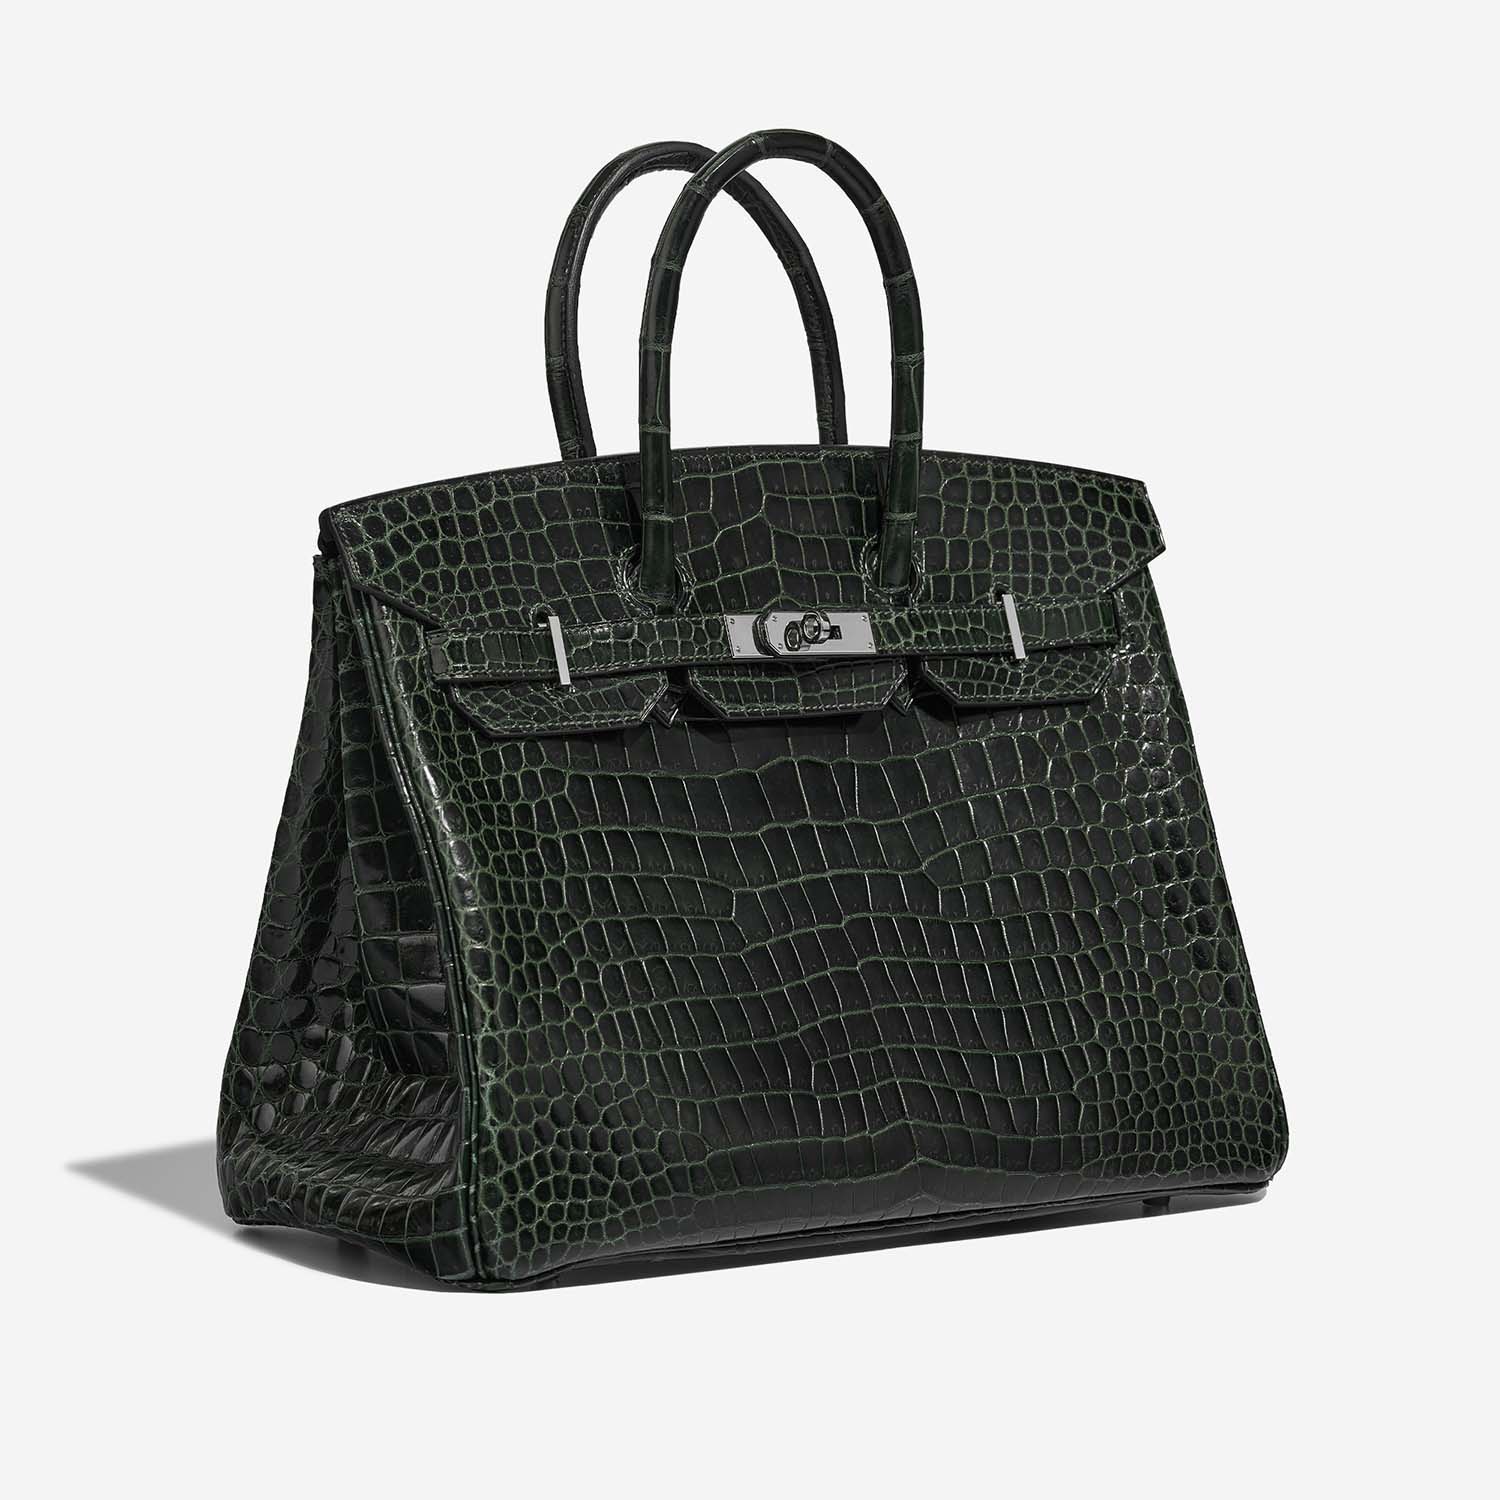 Sac Hermès d'occasion Birkin 35 Porosus Crocodile Vert Foncé Green | Vendez votre sac de créateur sur Saclab.com